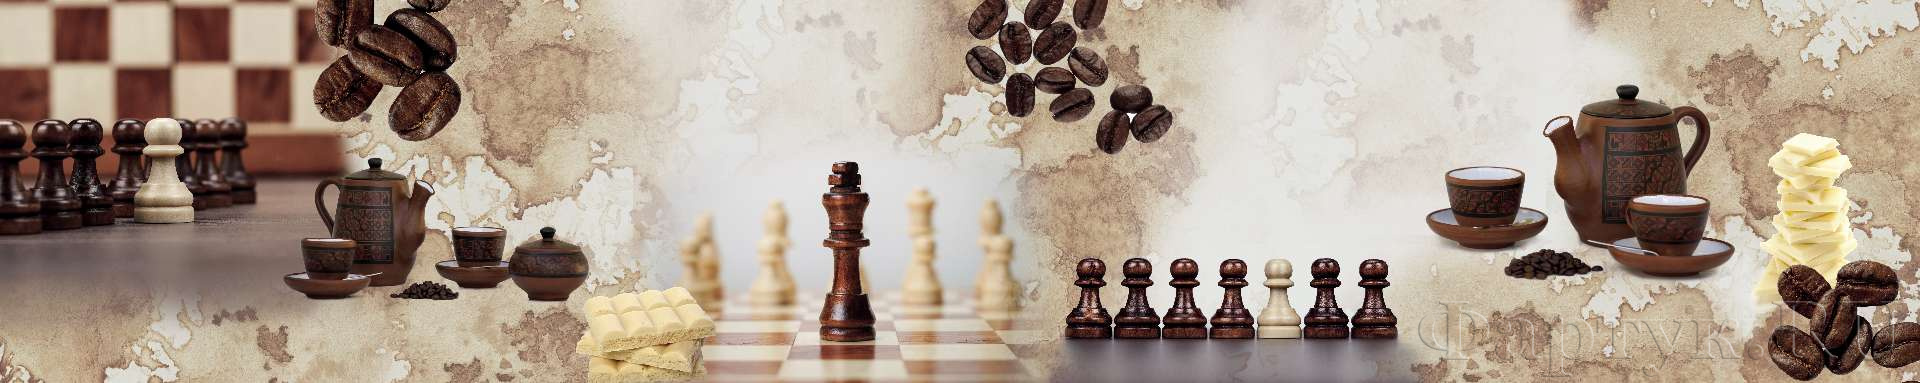 Коллаж кофе шахматы